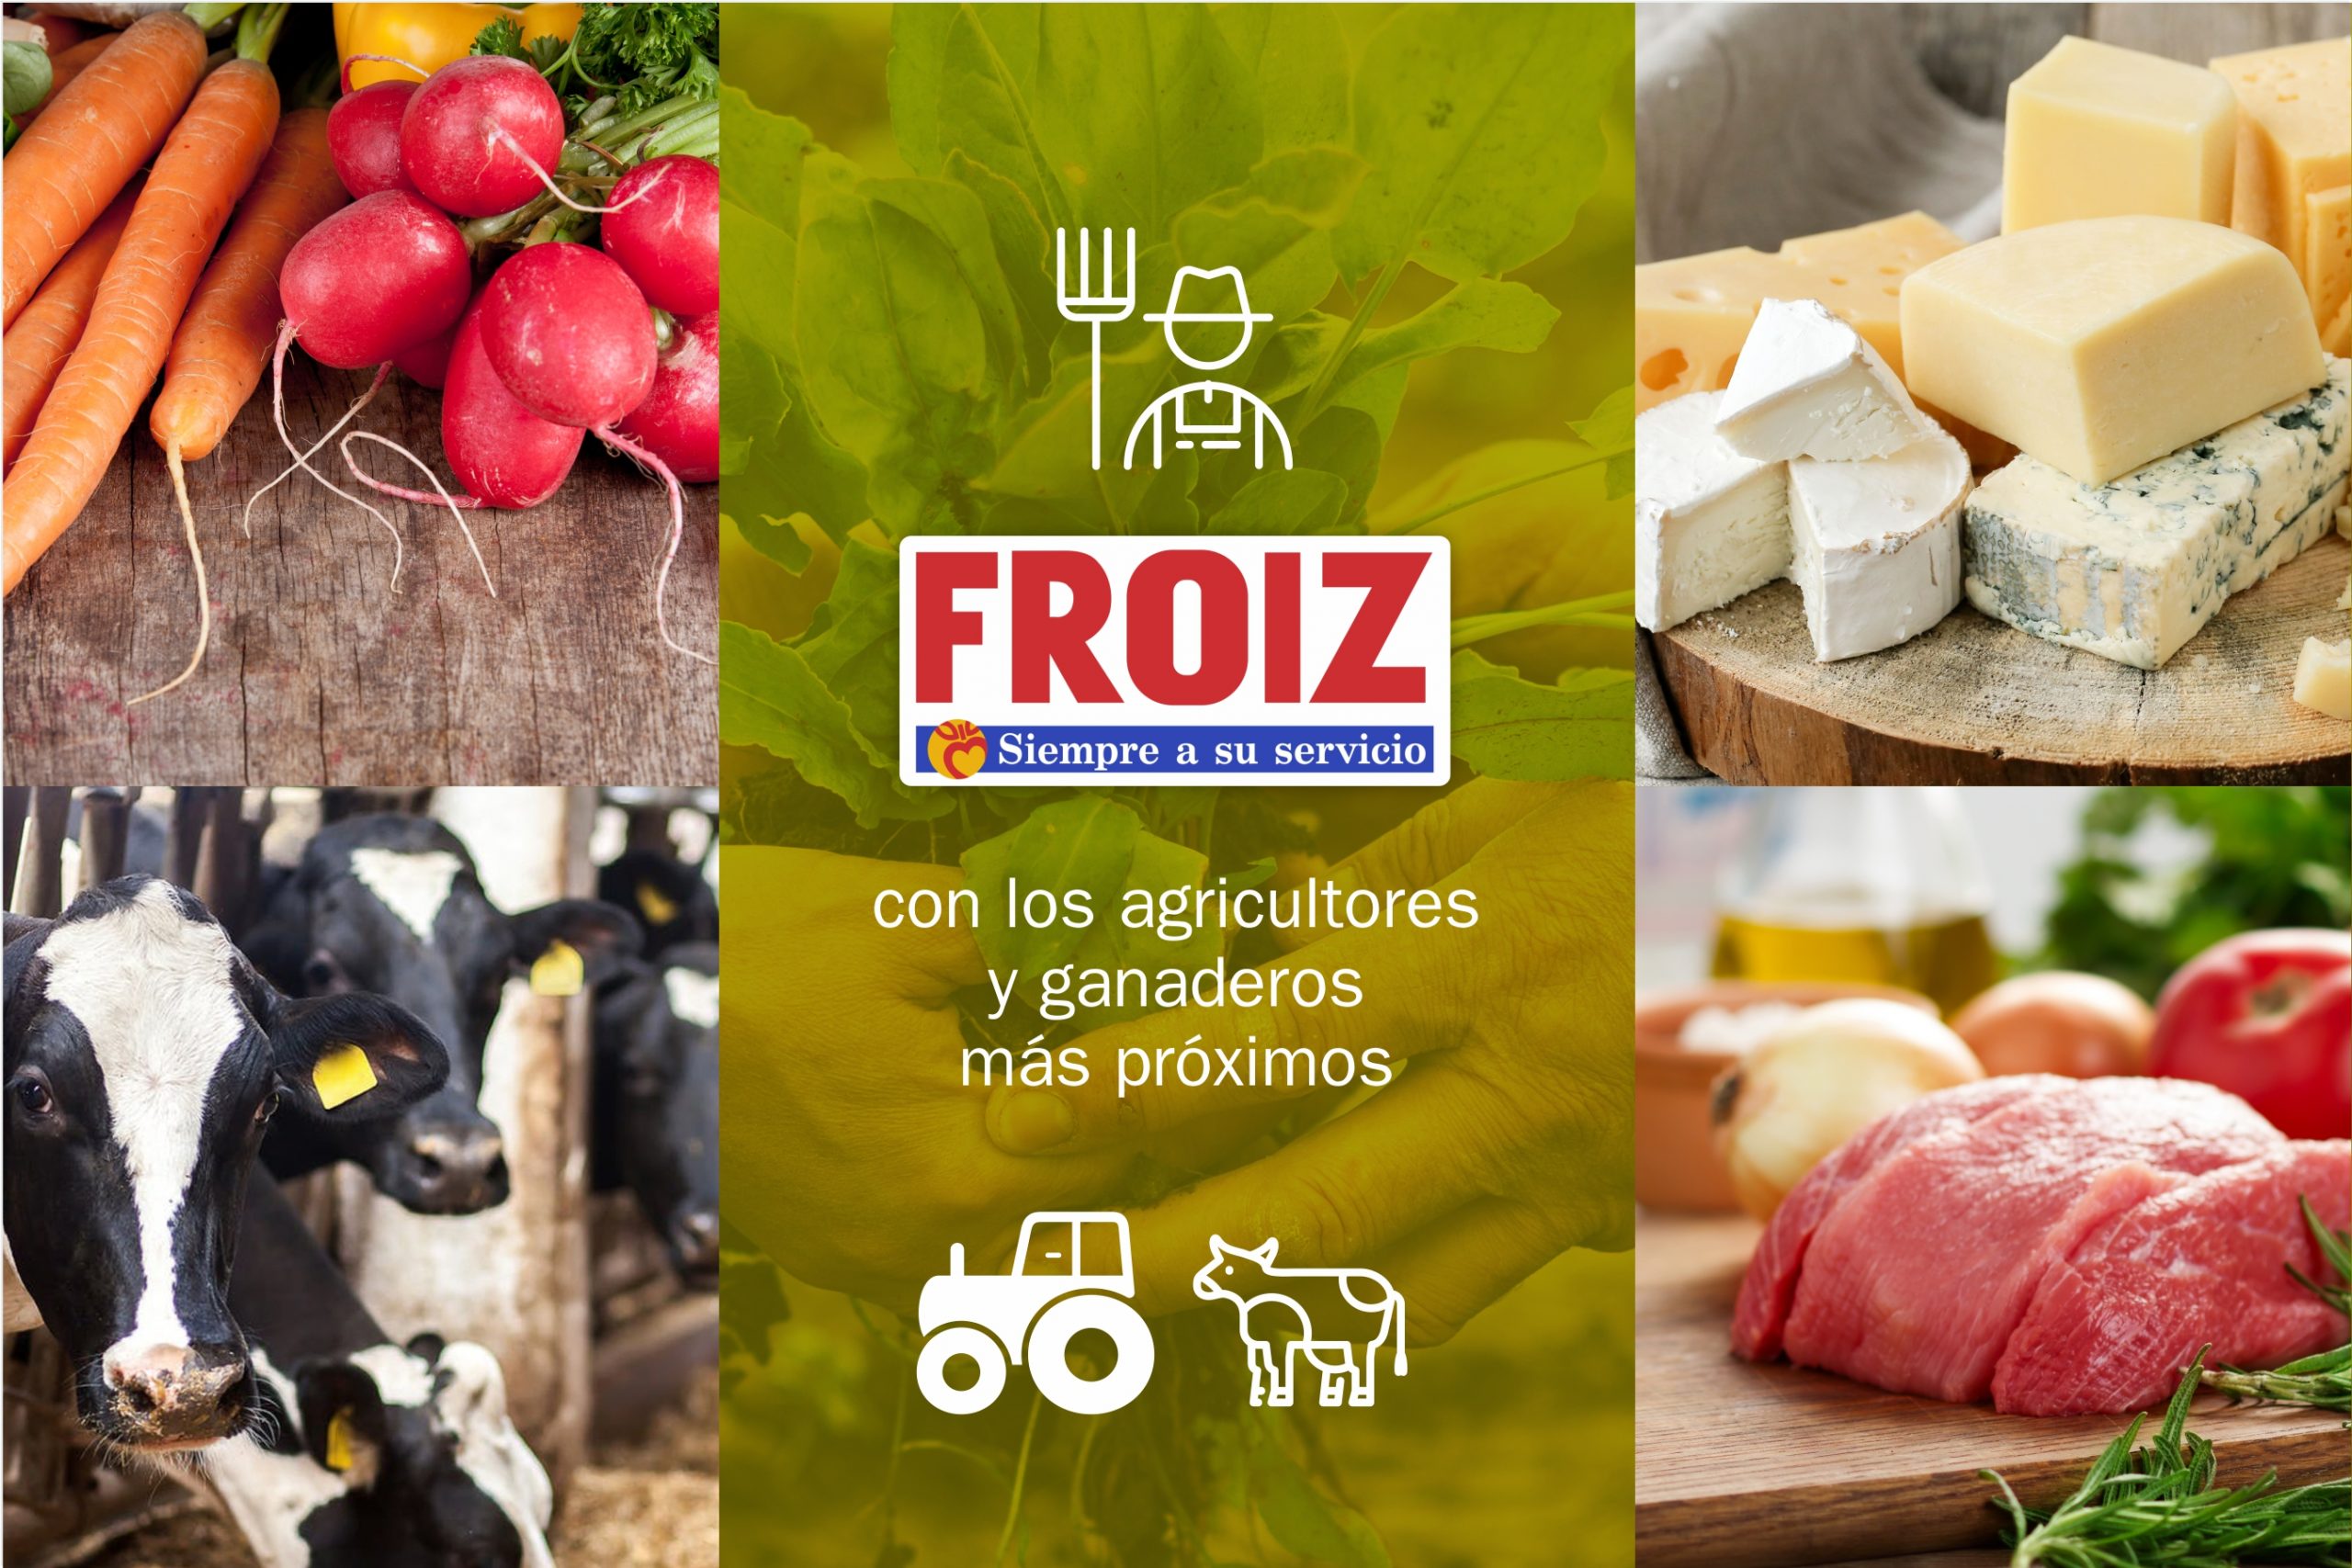 Froiz, una empresa comprometida con la agricultura y ganadería local